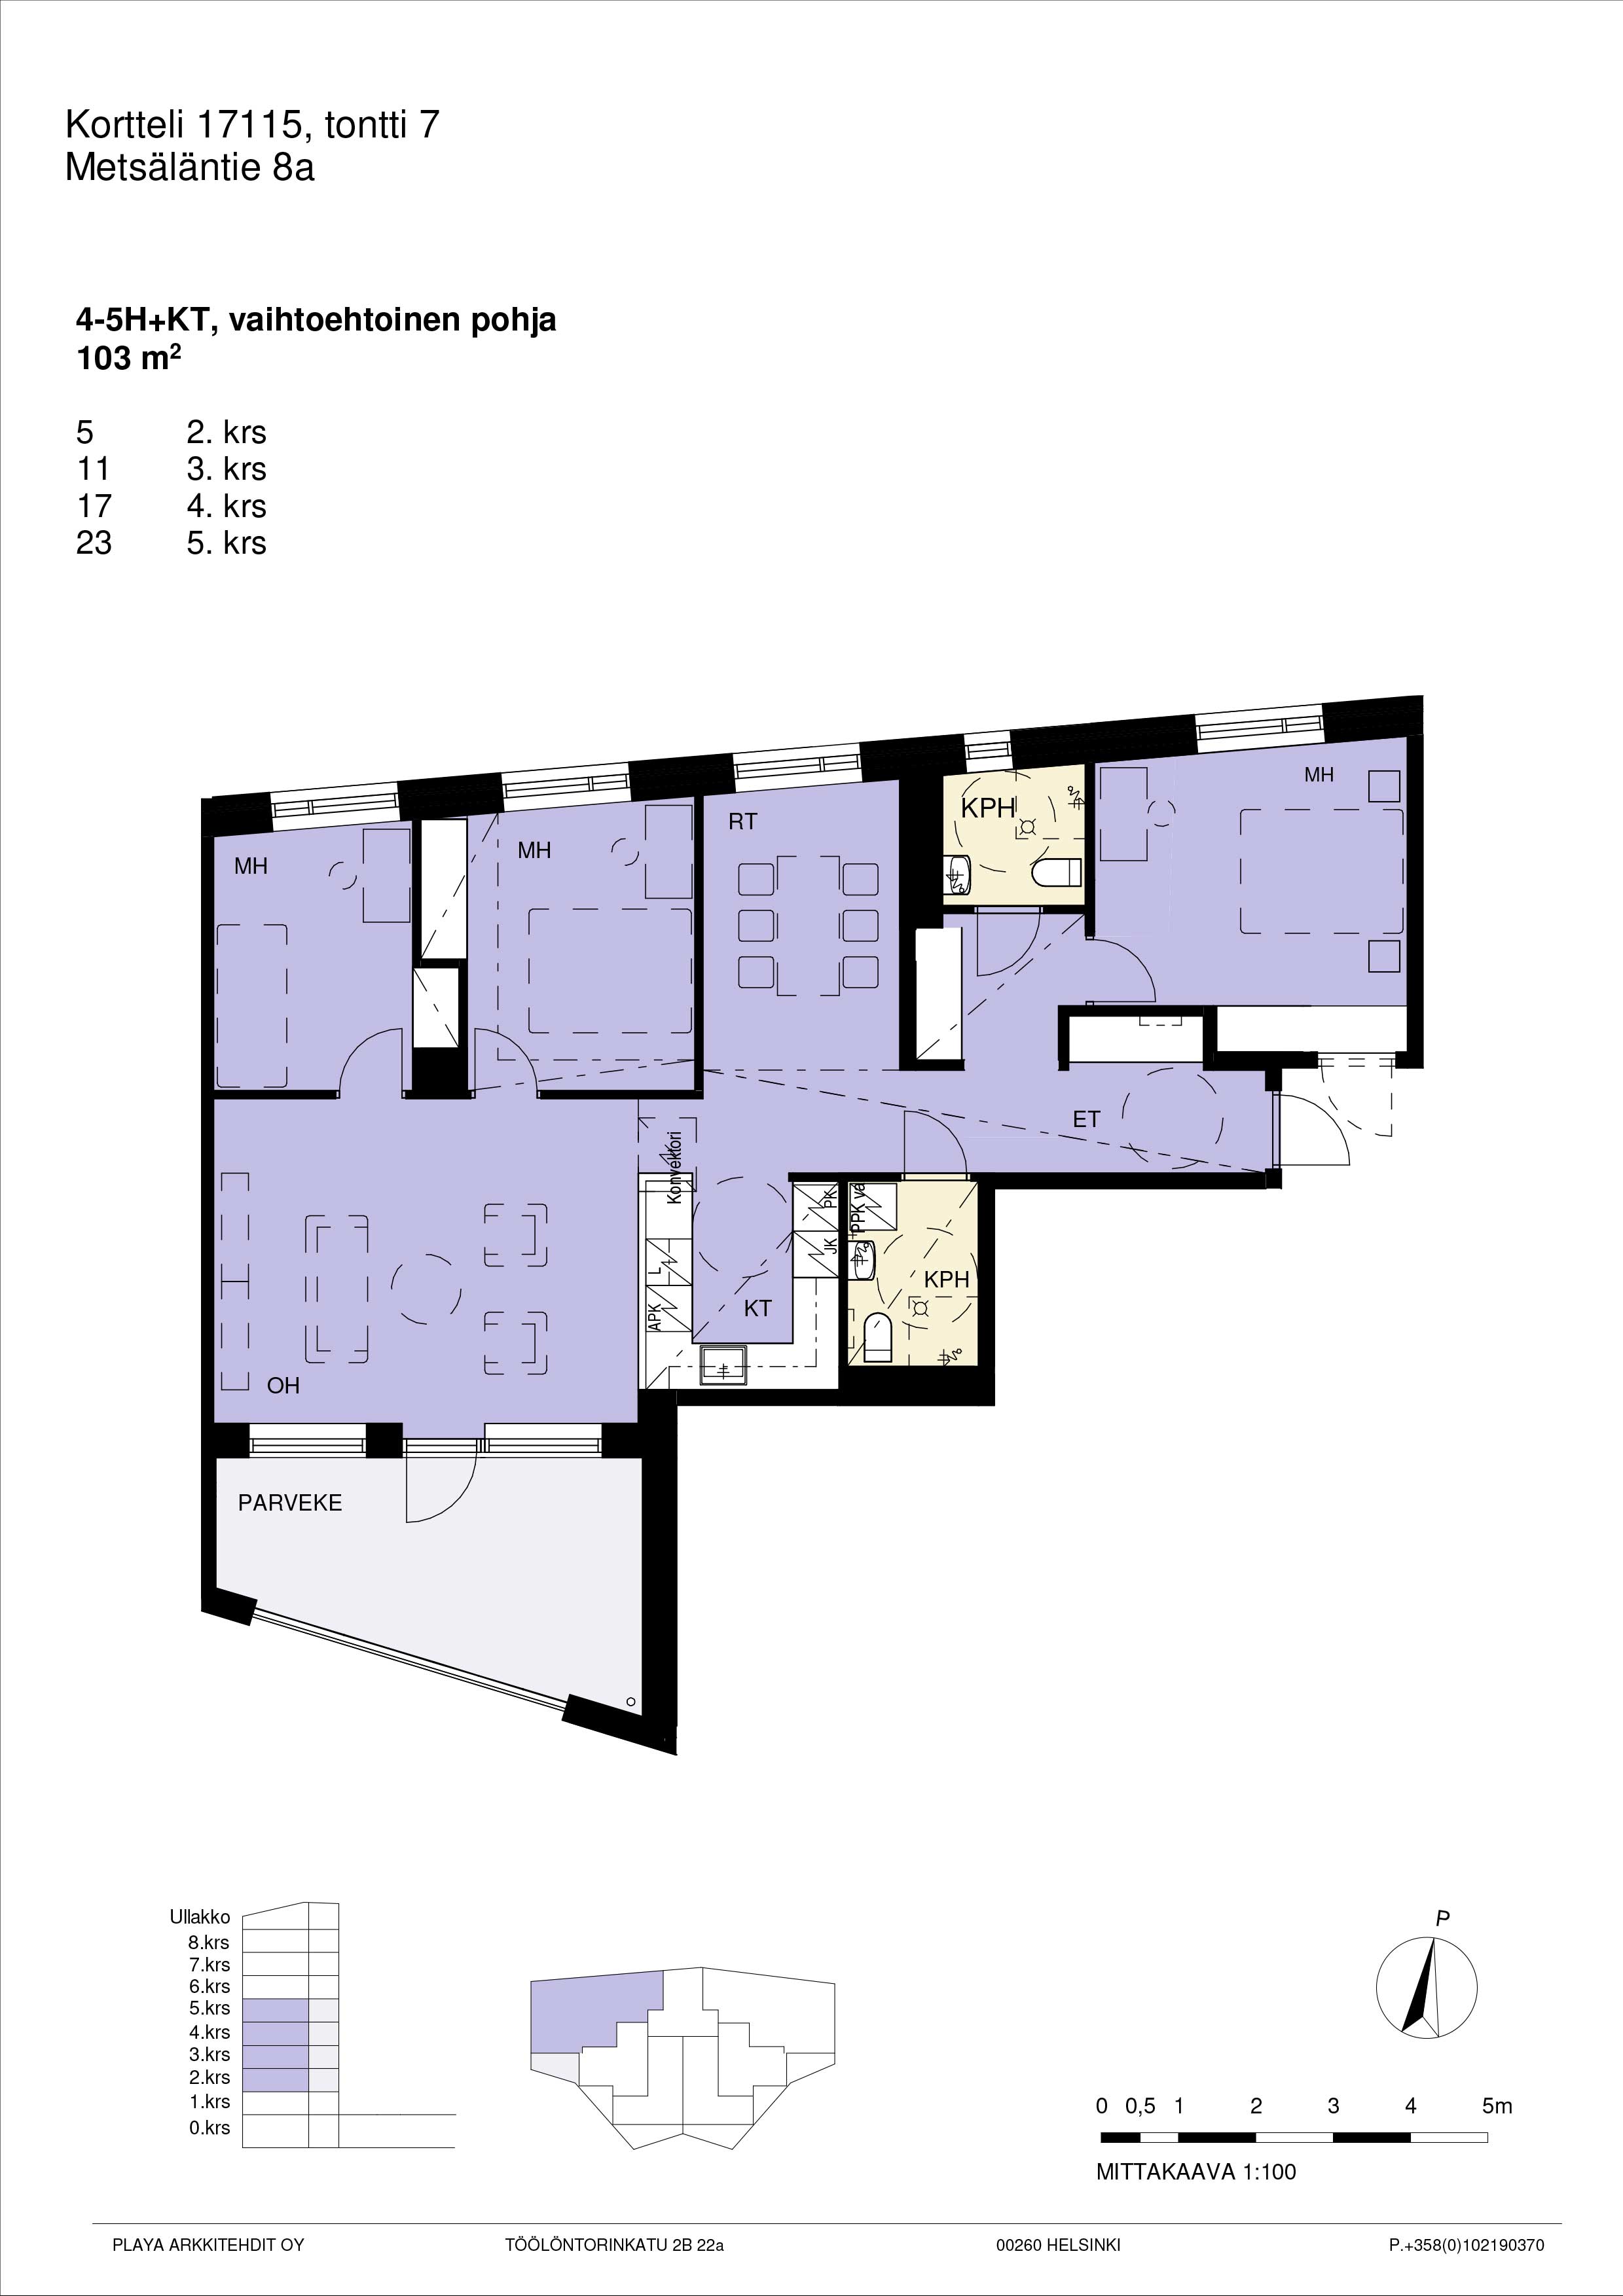 Vaihtoehtopohja: Pohjakuva A11, 4-5h+kt yhtenäinen suuri asunto 103 m2